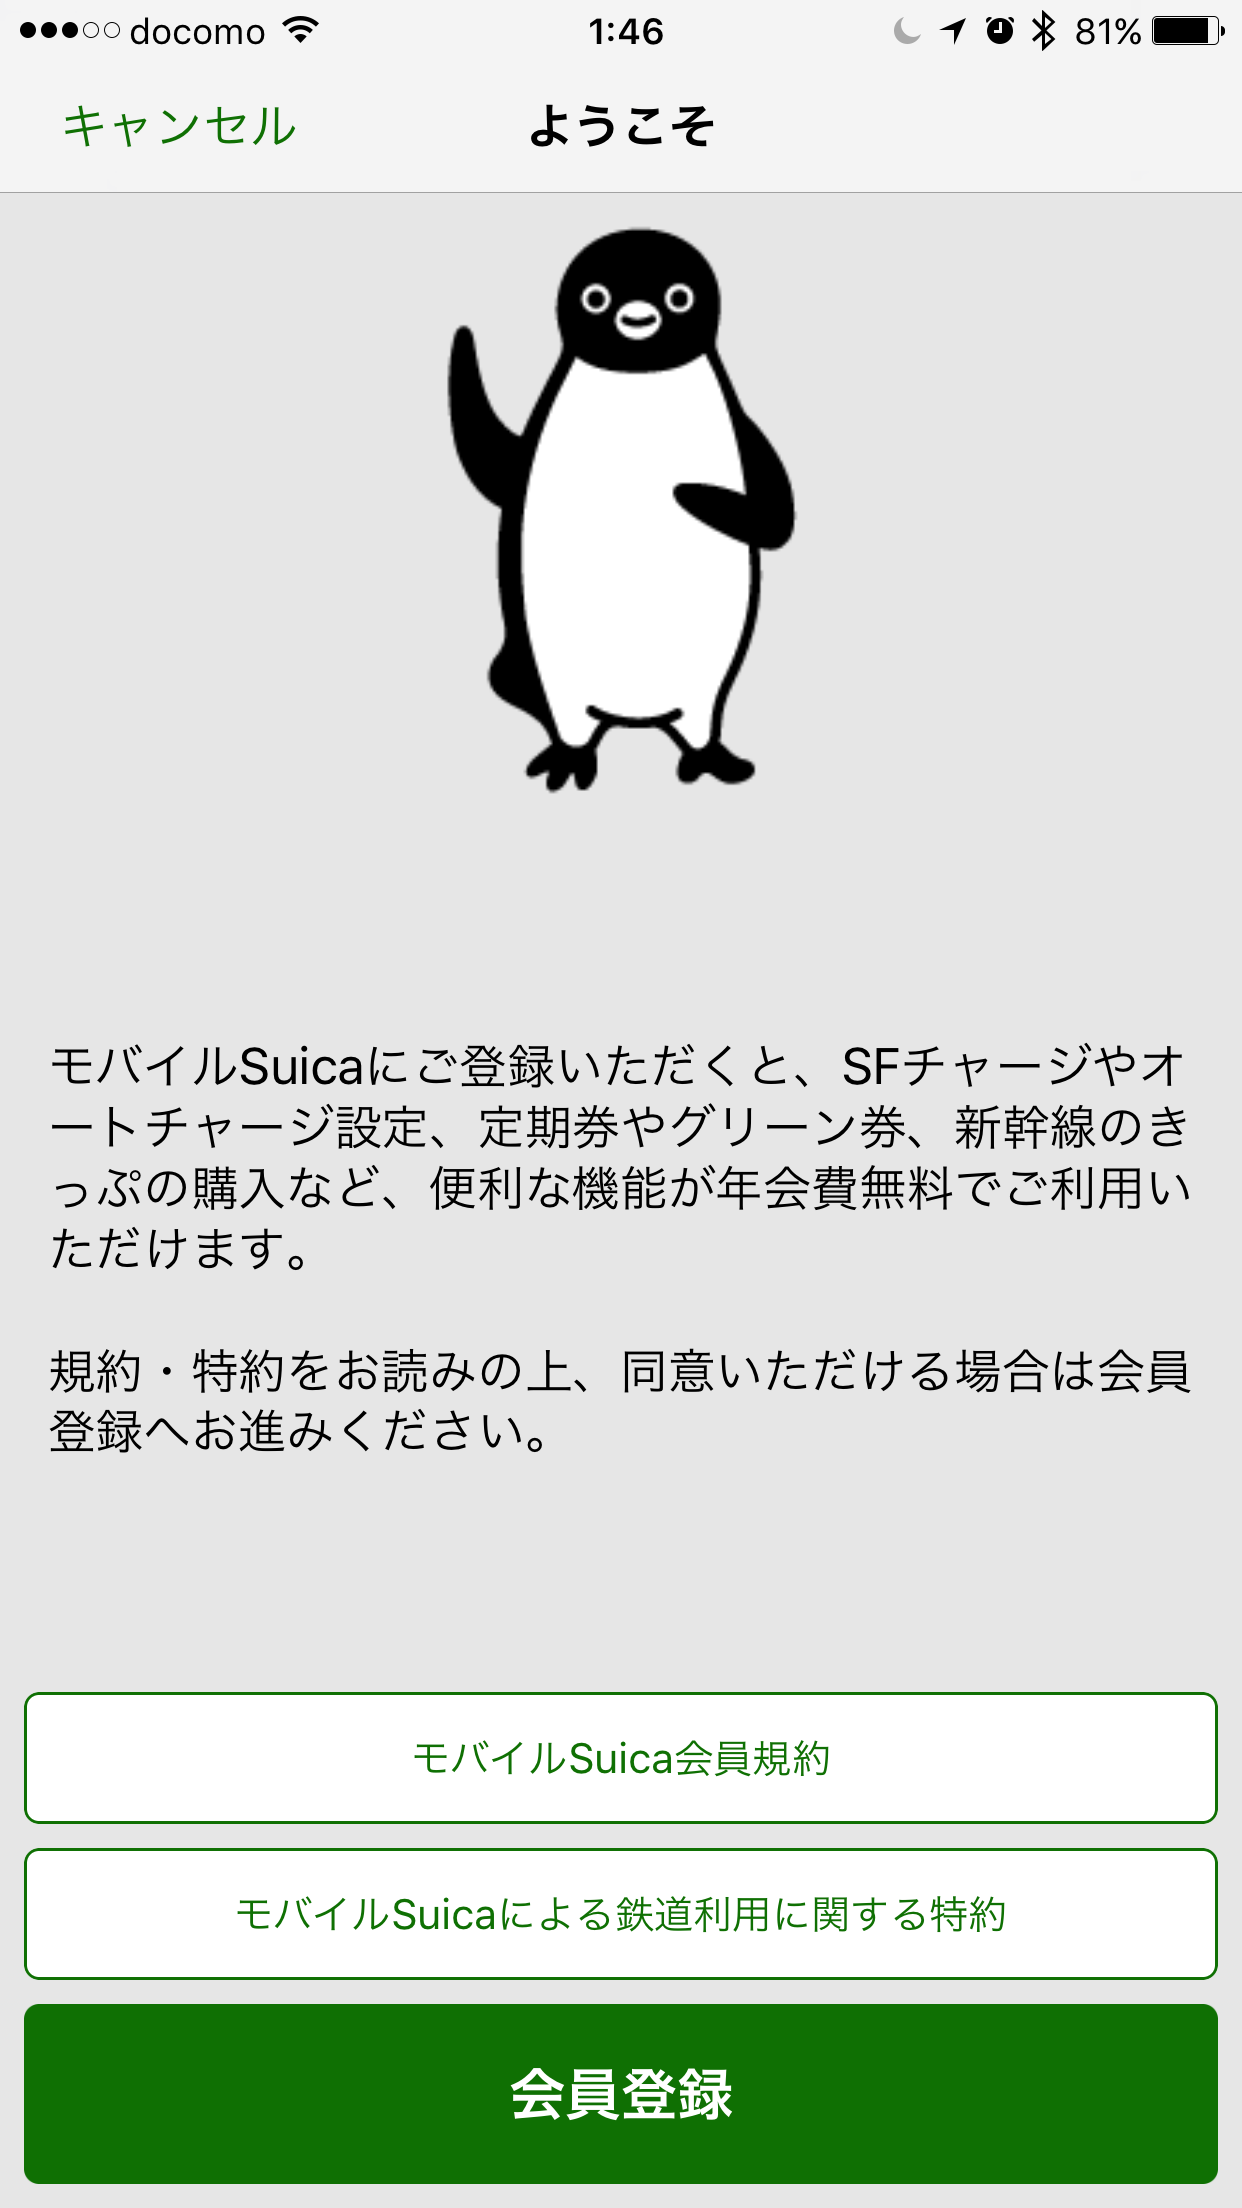 Suicaアプリ